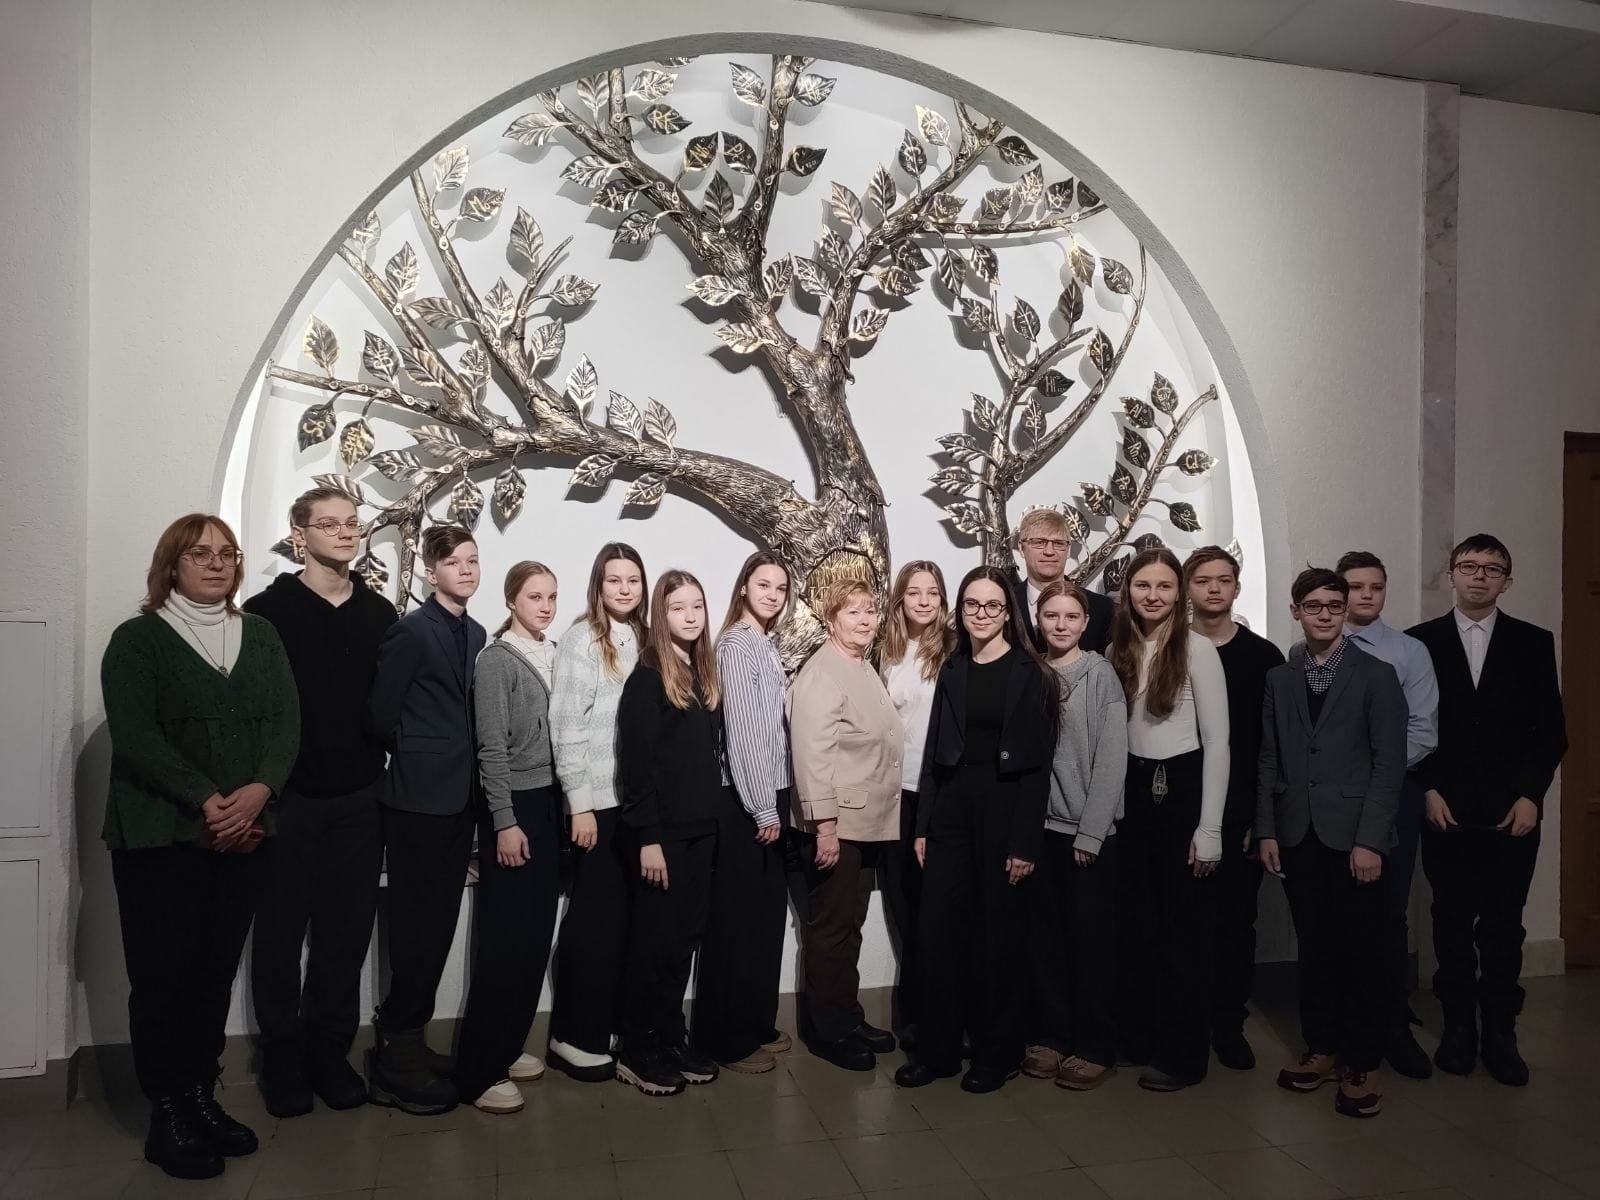 29 февраля группа учащихся 8а класса посетила ИГХТУ.